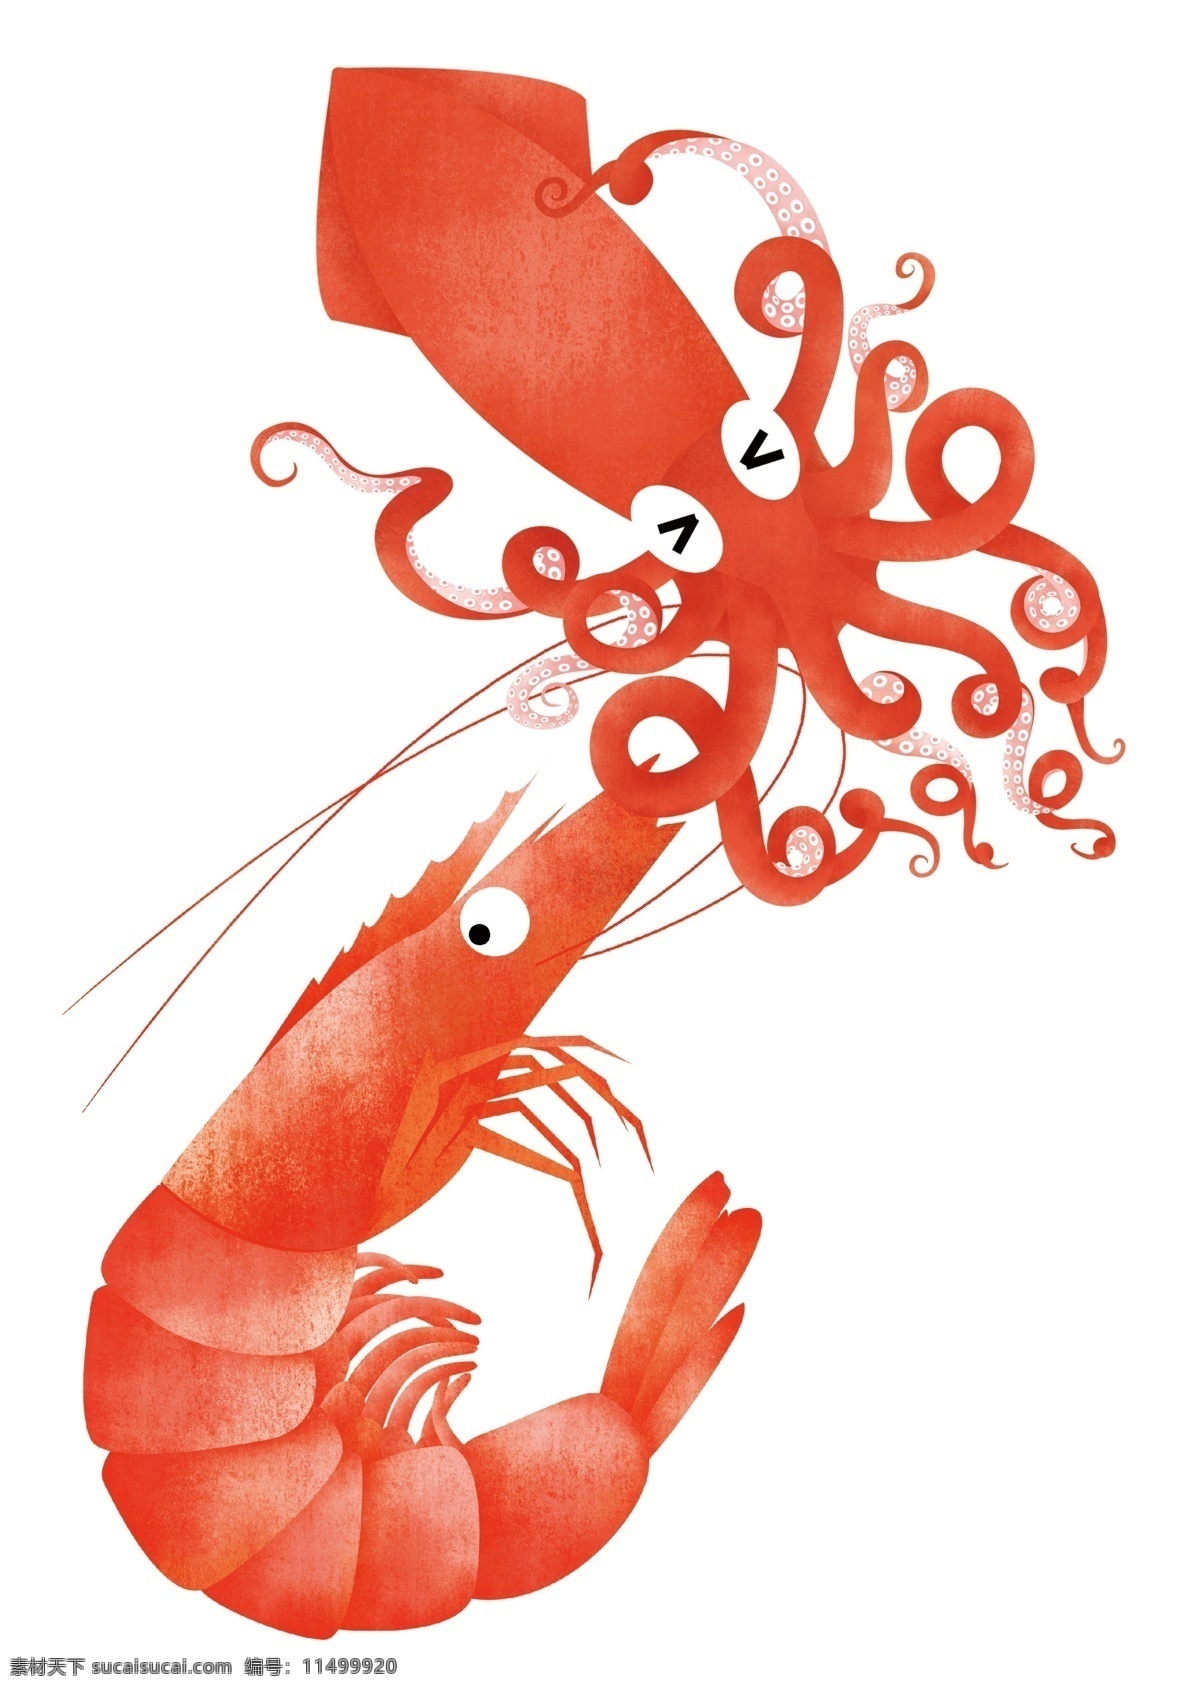 手绘海鲜食材 手绘鱿鱼 手绘虾 卡通 可爱卡通 手绘海鲜食物 虾干 鱿鱼干 设计图 分层